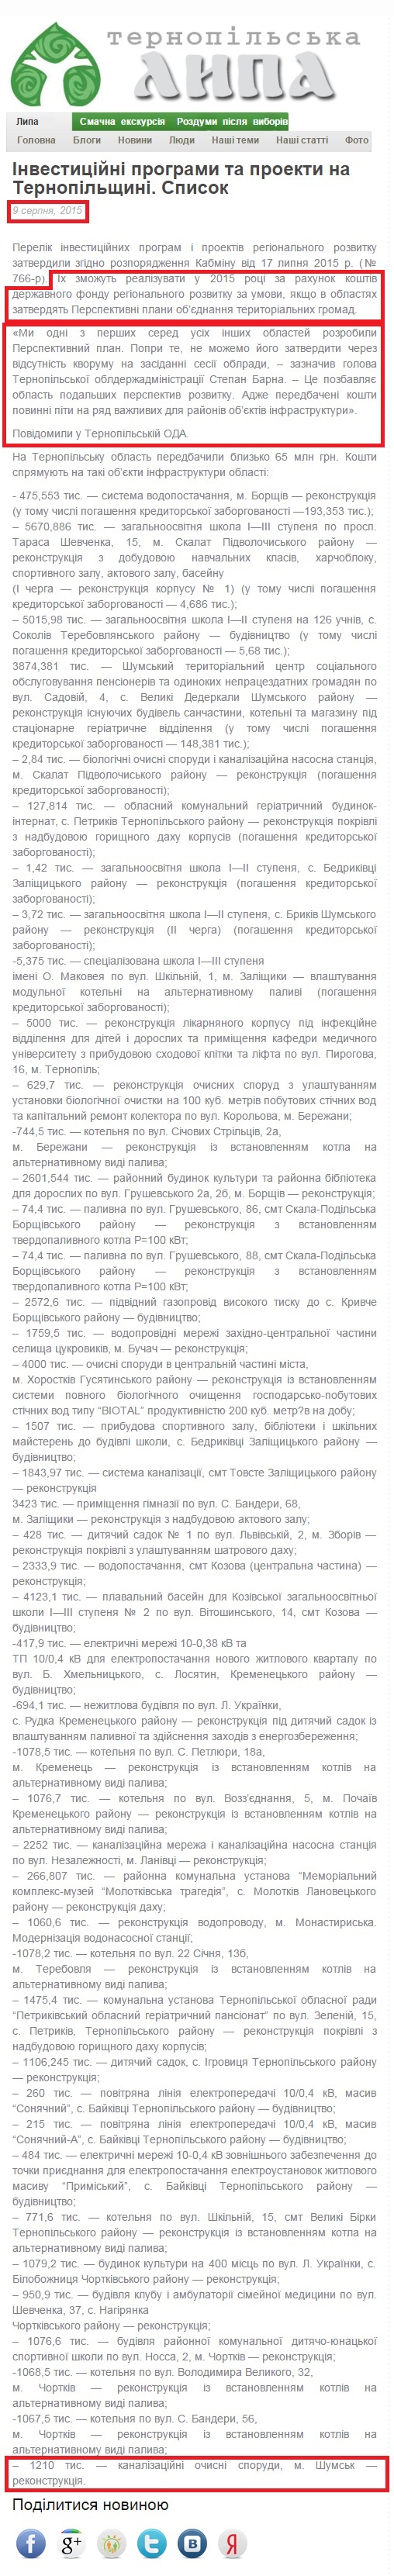 http://lypa.com.ua/2015/08/09/investytsijni-prohramy-ta-proekty-na-ternopilschyni-spysok/